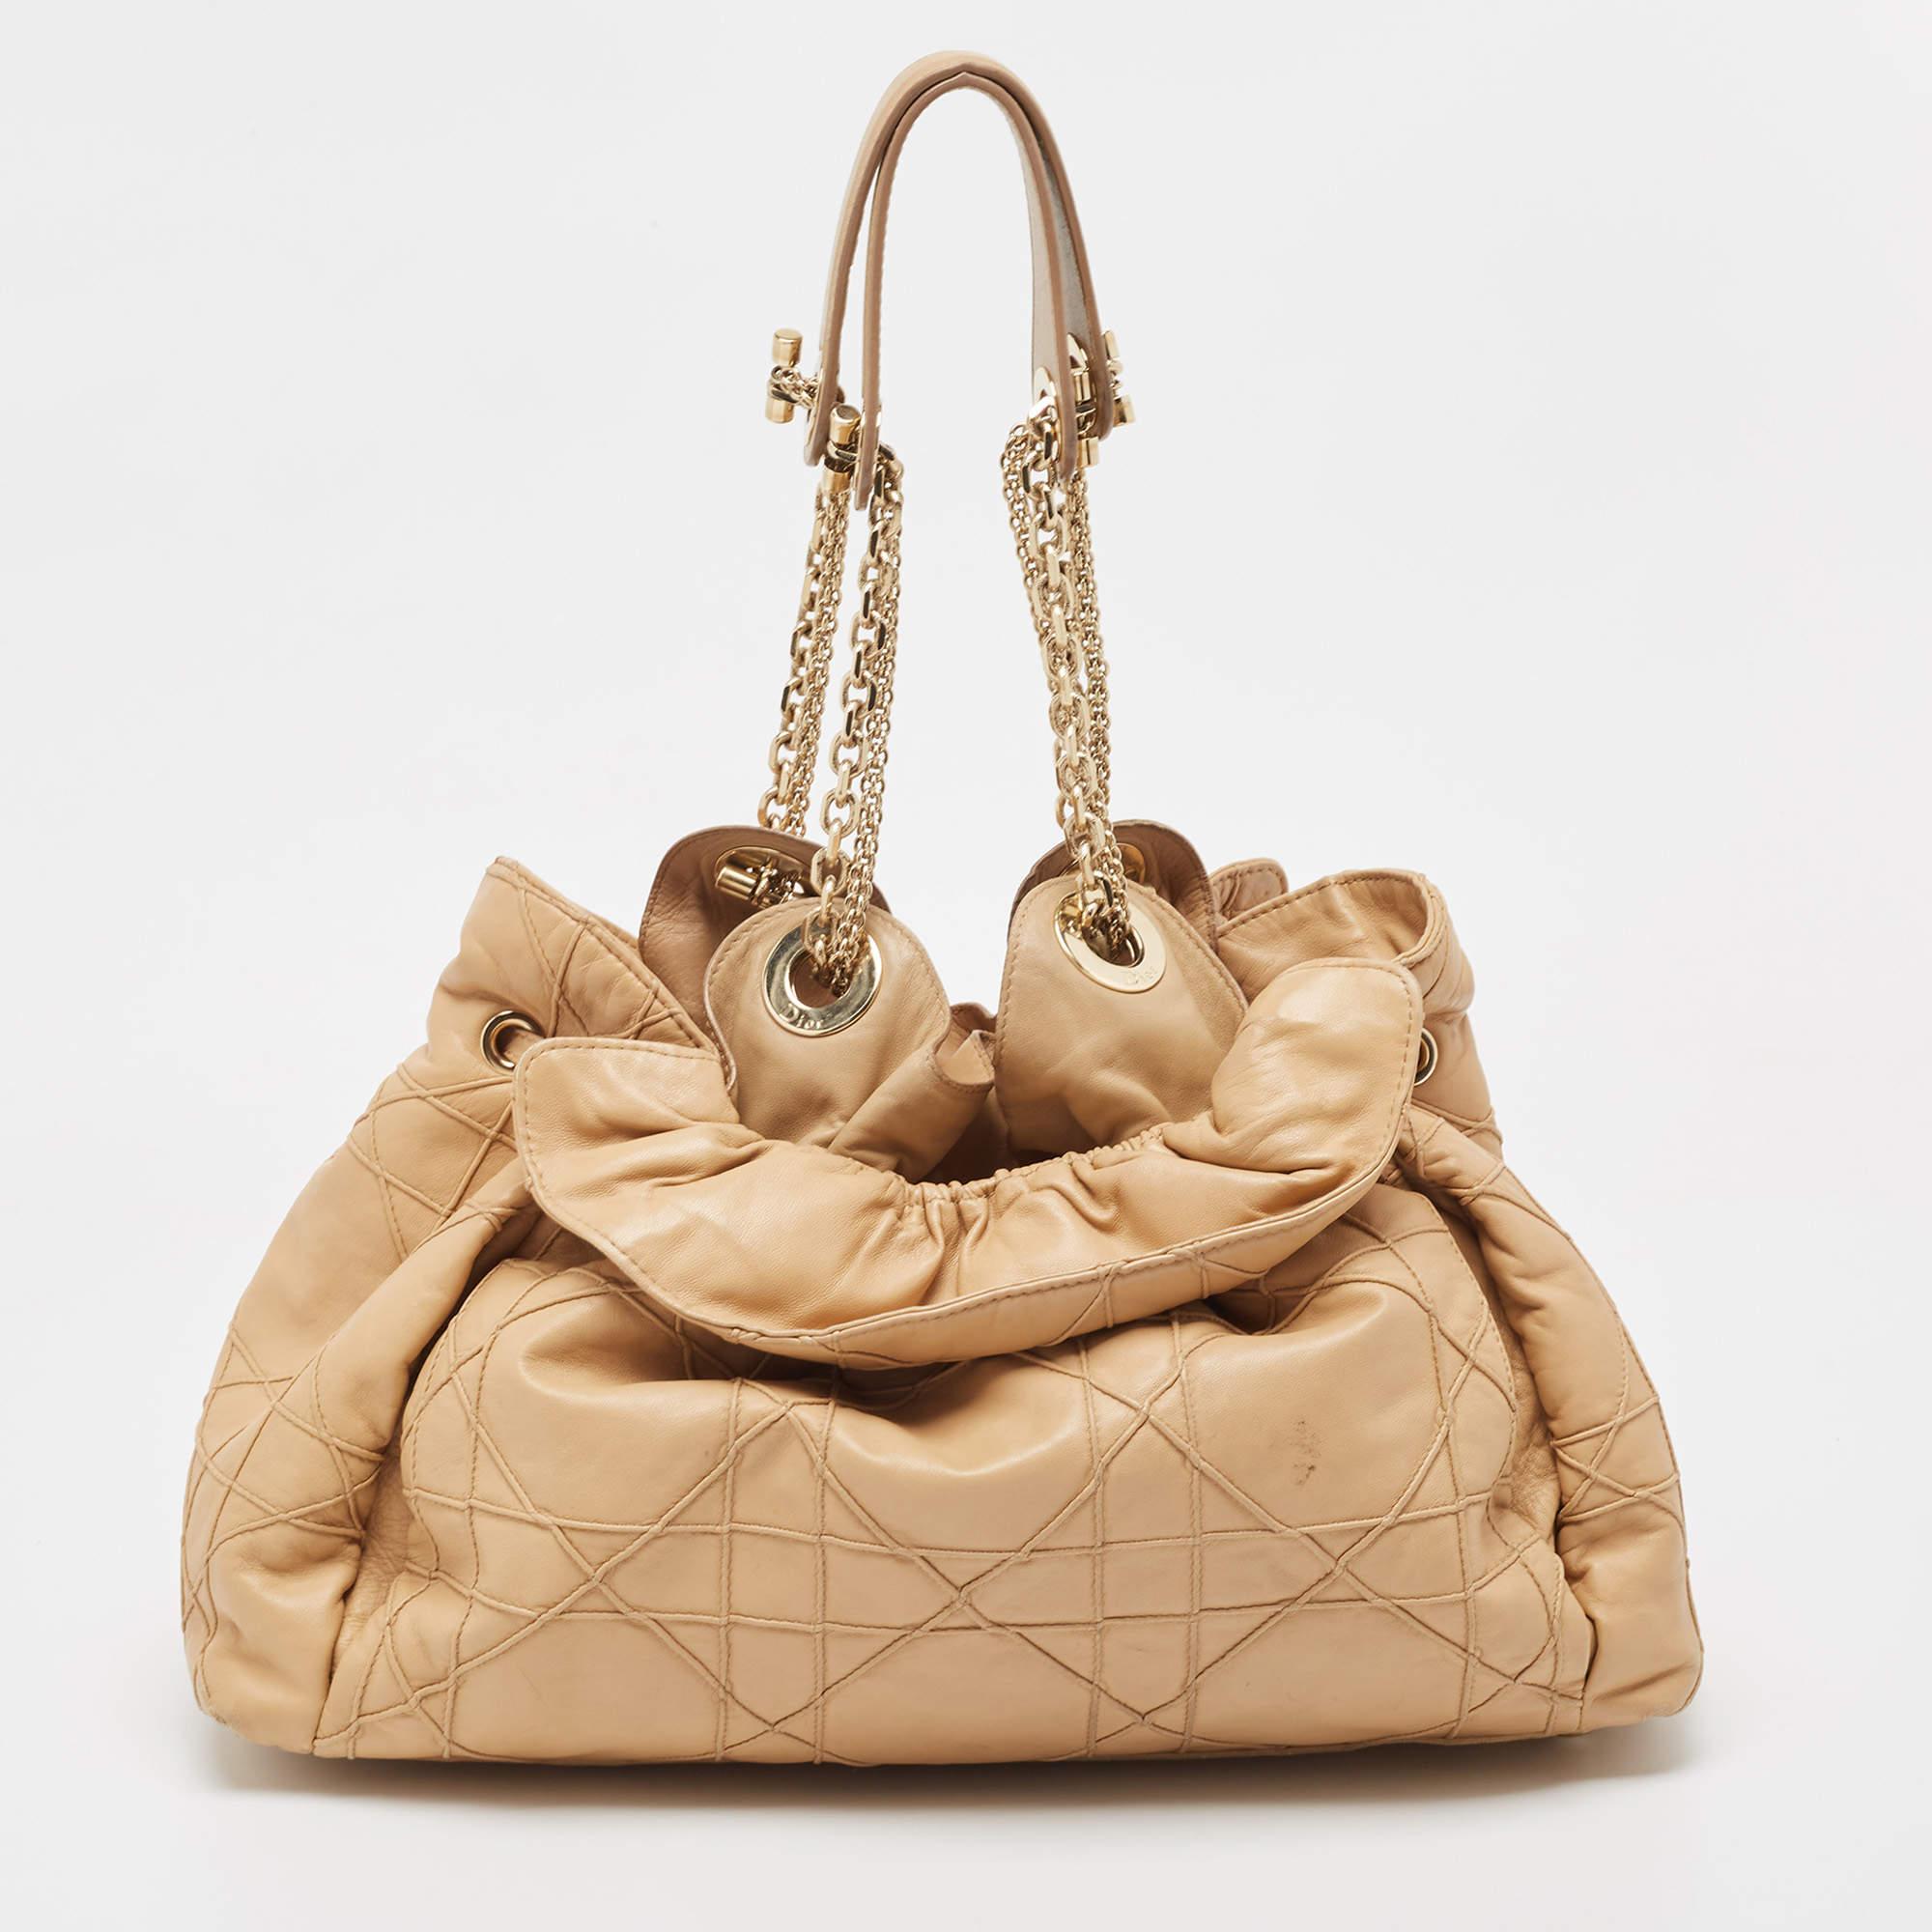 Pour un look complet avec du style, du goût et une touche de Lux, ce sac de créateur est le complément parfait. Affichez cette beauté sur votre épaule et savourez le goût du luxe qu'elle vous laisse.

